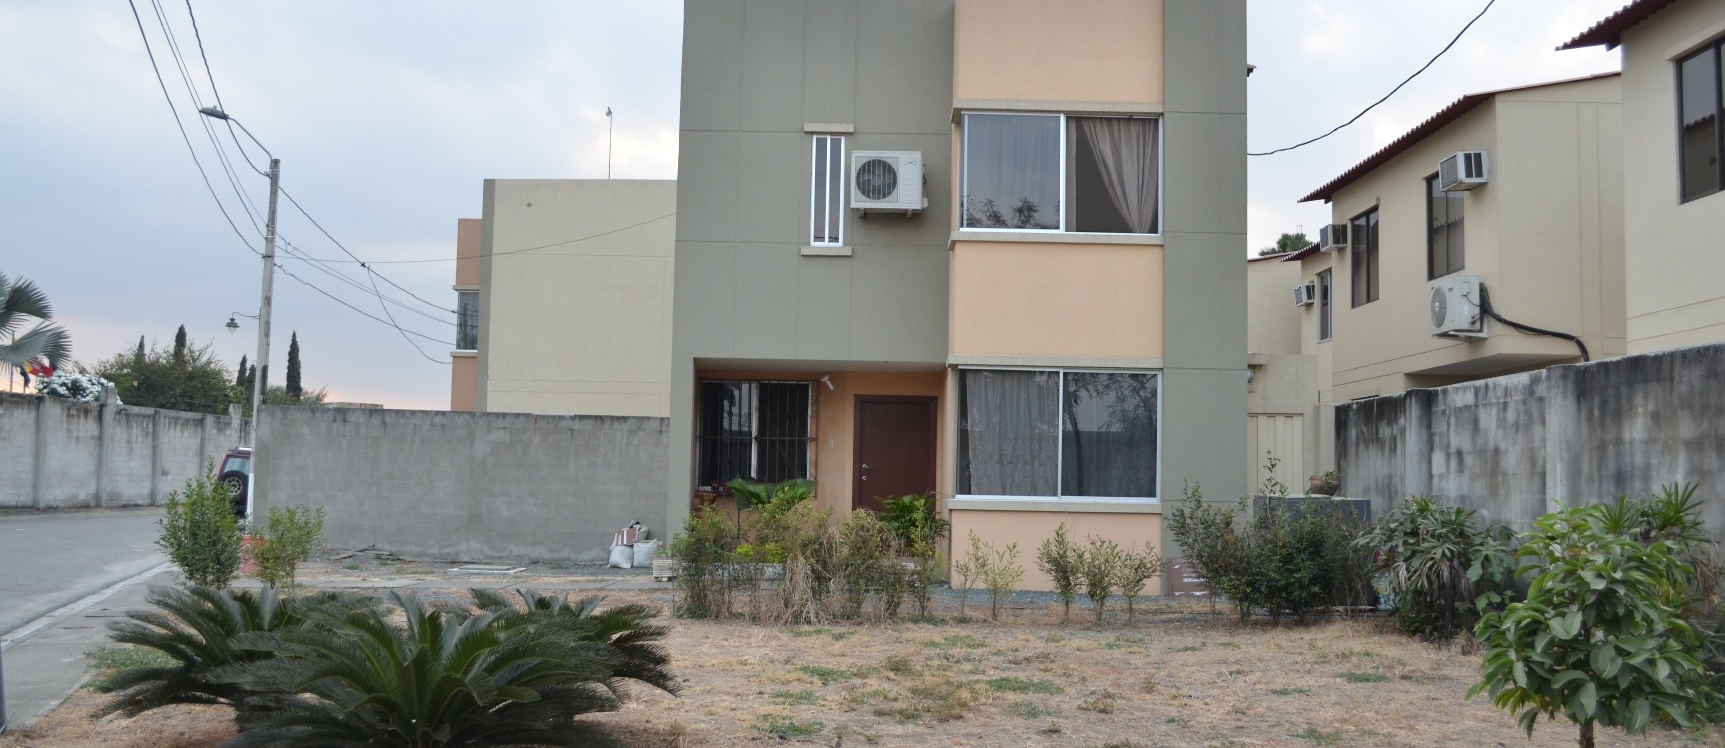 GeoBienes - Casa en venta en urbanización Castilla Km 13 Via Samborondon  - Plusvalia Guayaquil Casas de venta y alquiler Inmobiliaria Ecuador